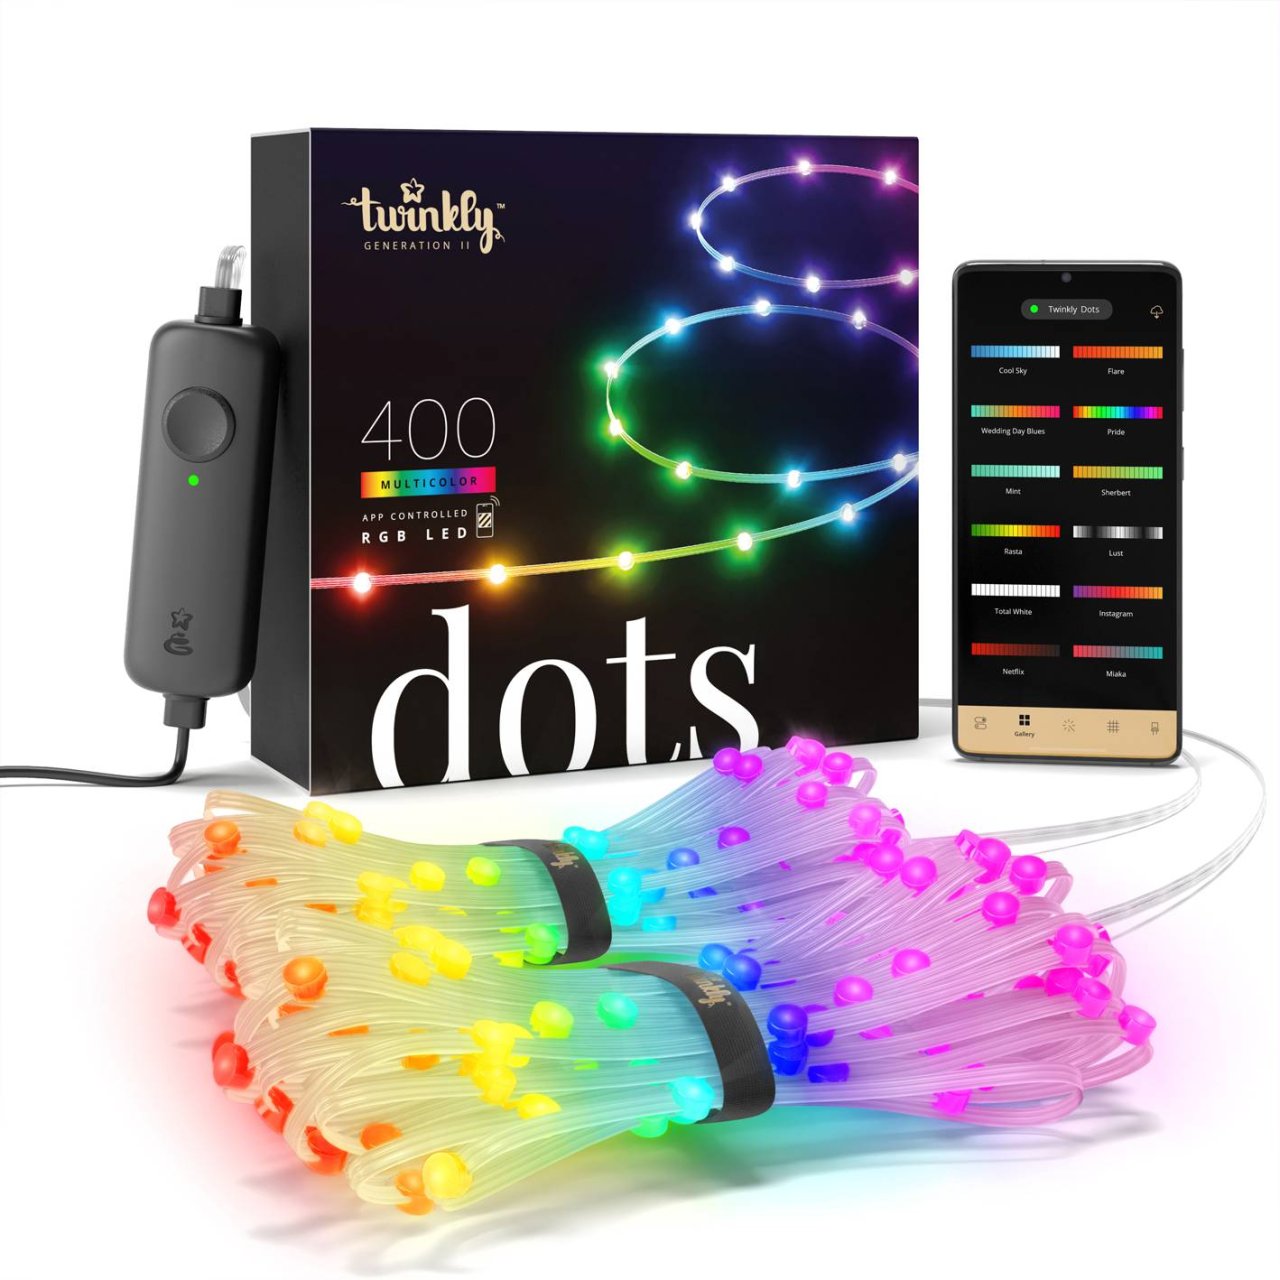 Twinkly smarte Lichterkette Dots, 20 m